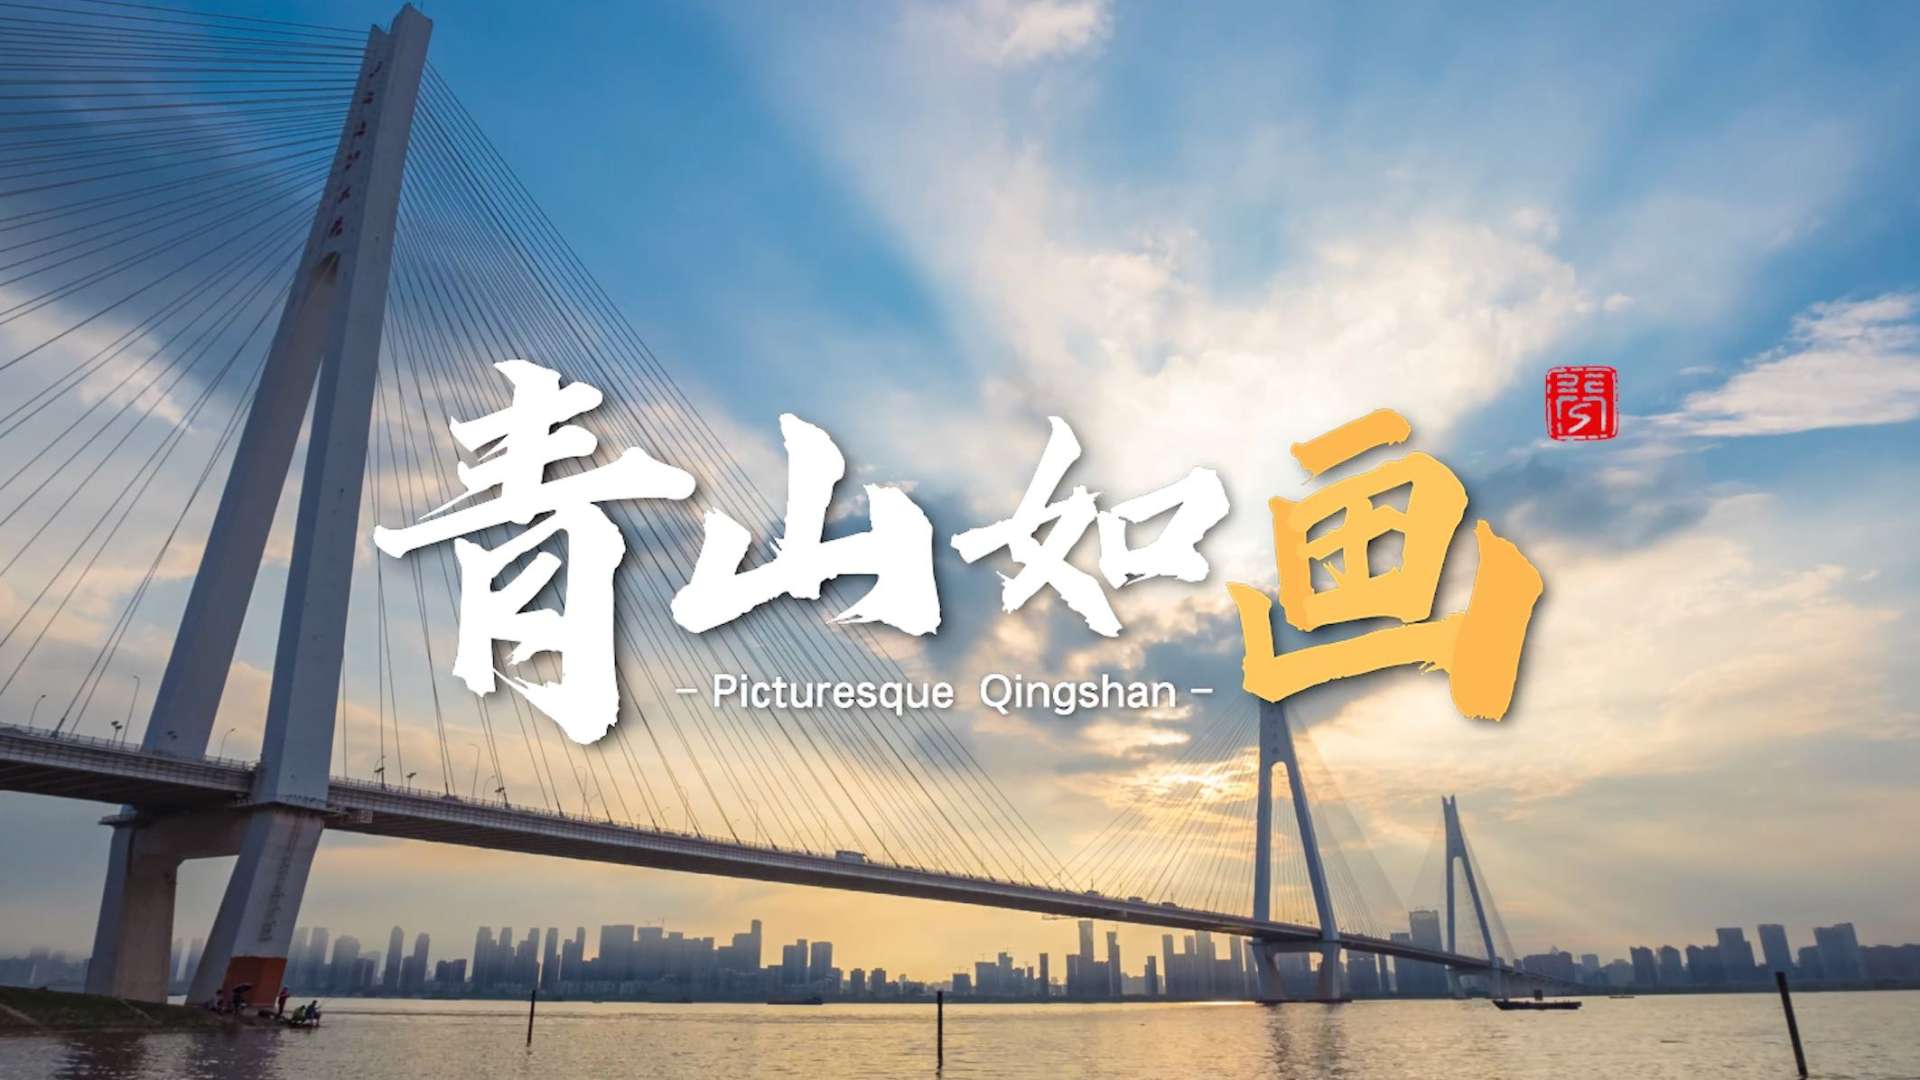 武汉市青山区宣传部年度宣传片《青山如画》